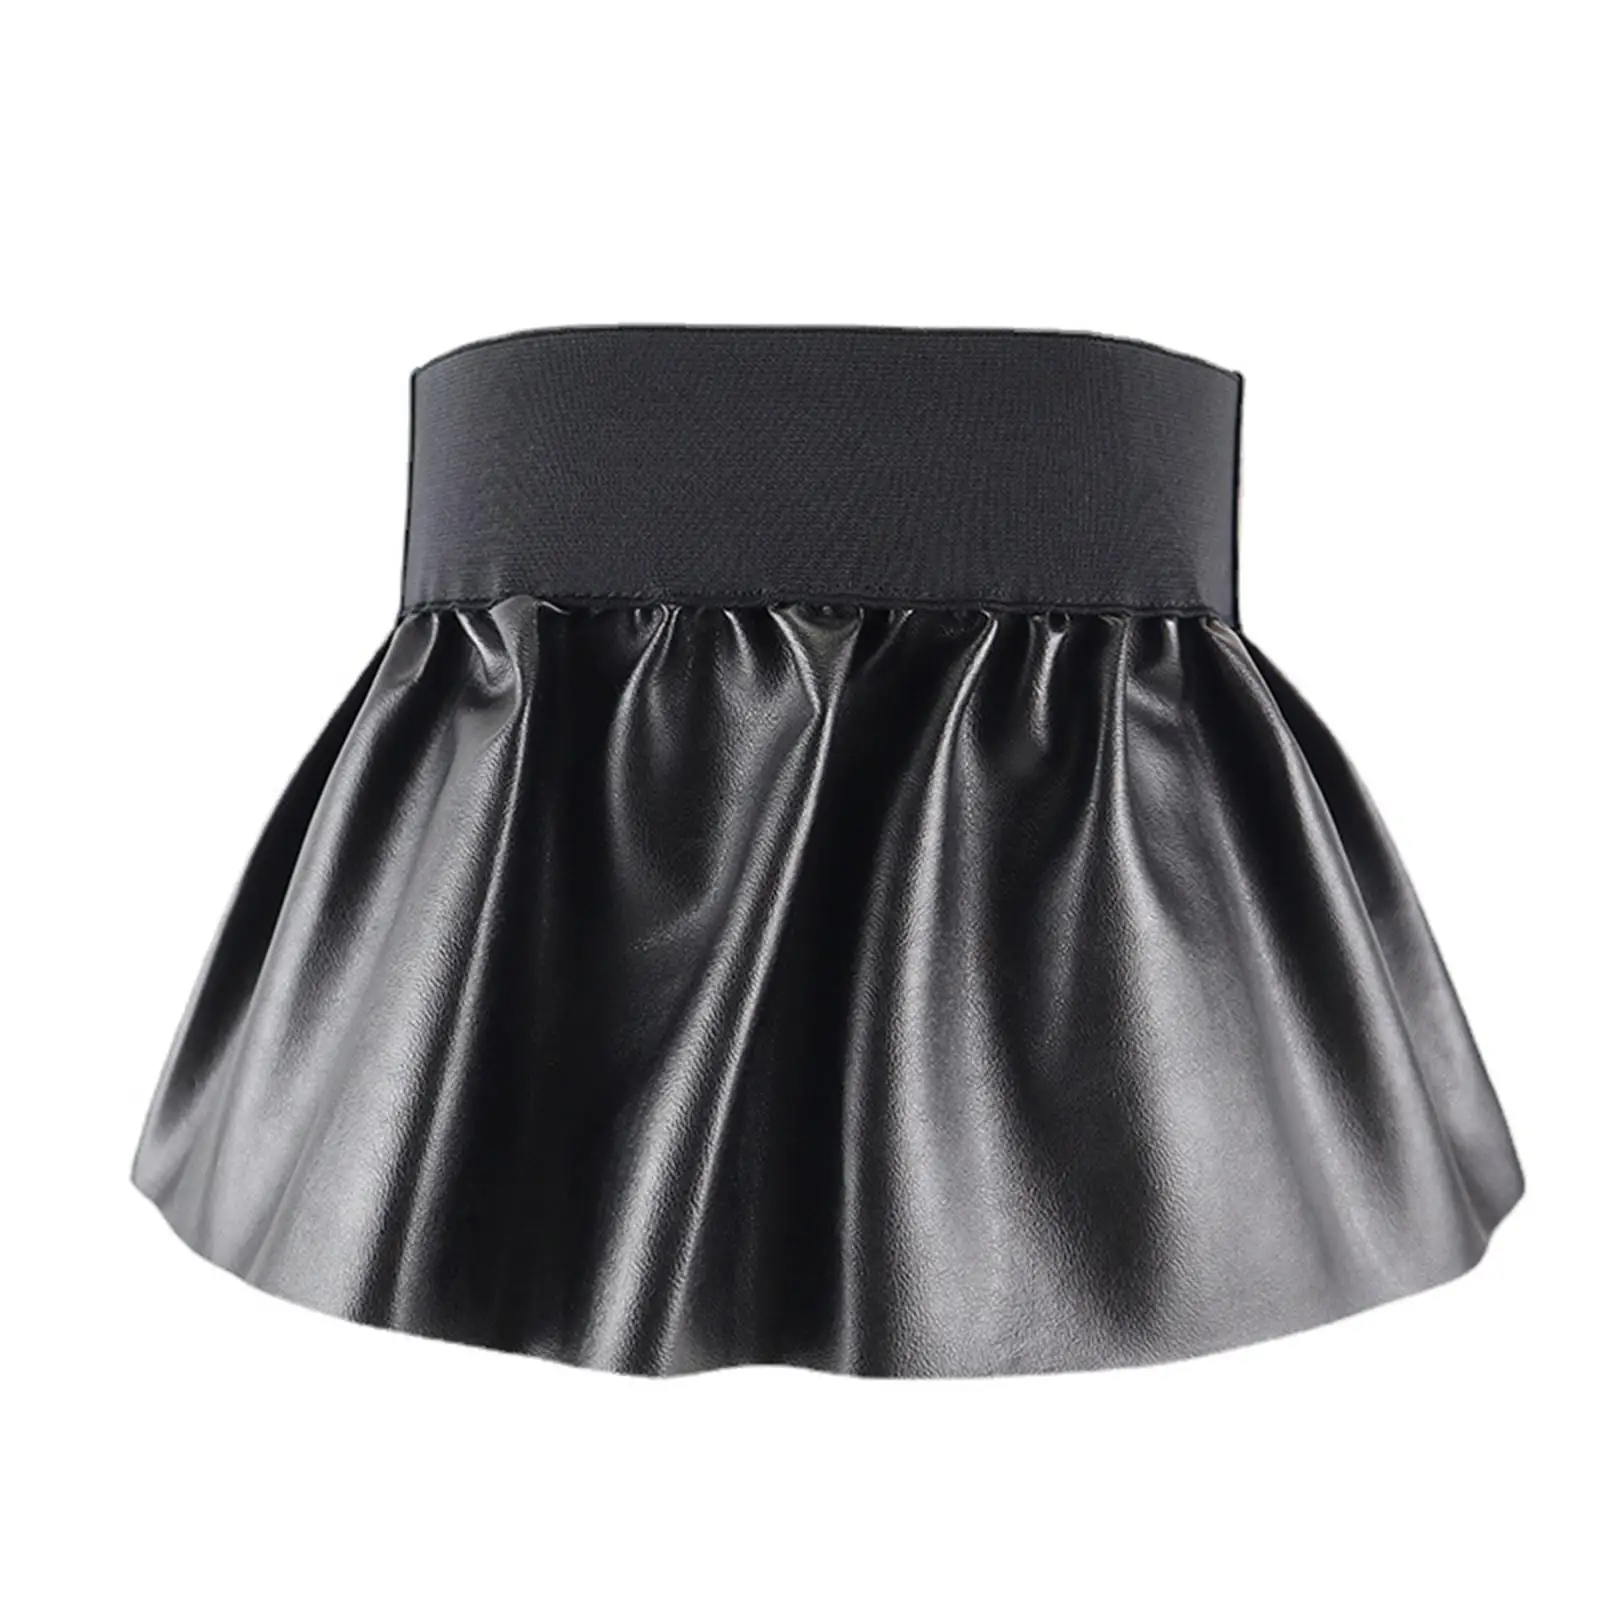 Fashion Waist Belt Skirts Wide Party Stretch Adjustable Womens Belt Corset Dress Cosplay Waistband Ruffle Wide Belts High Waist